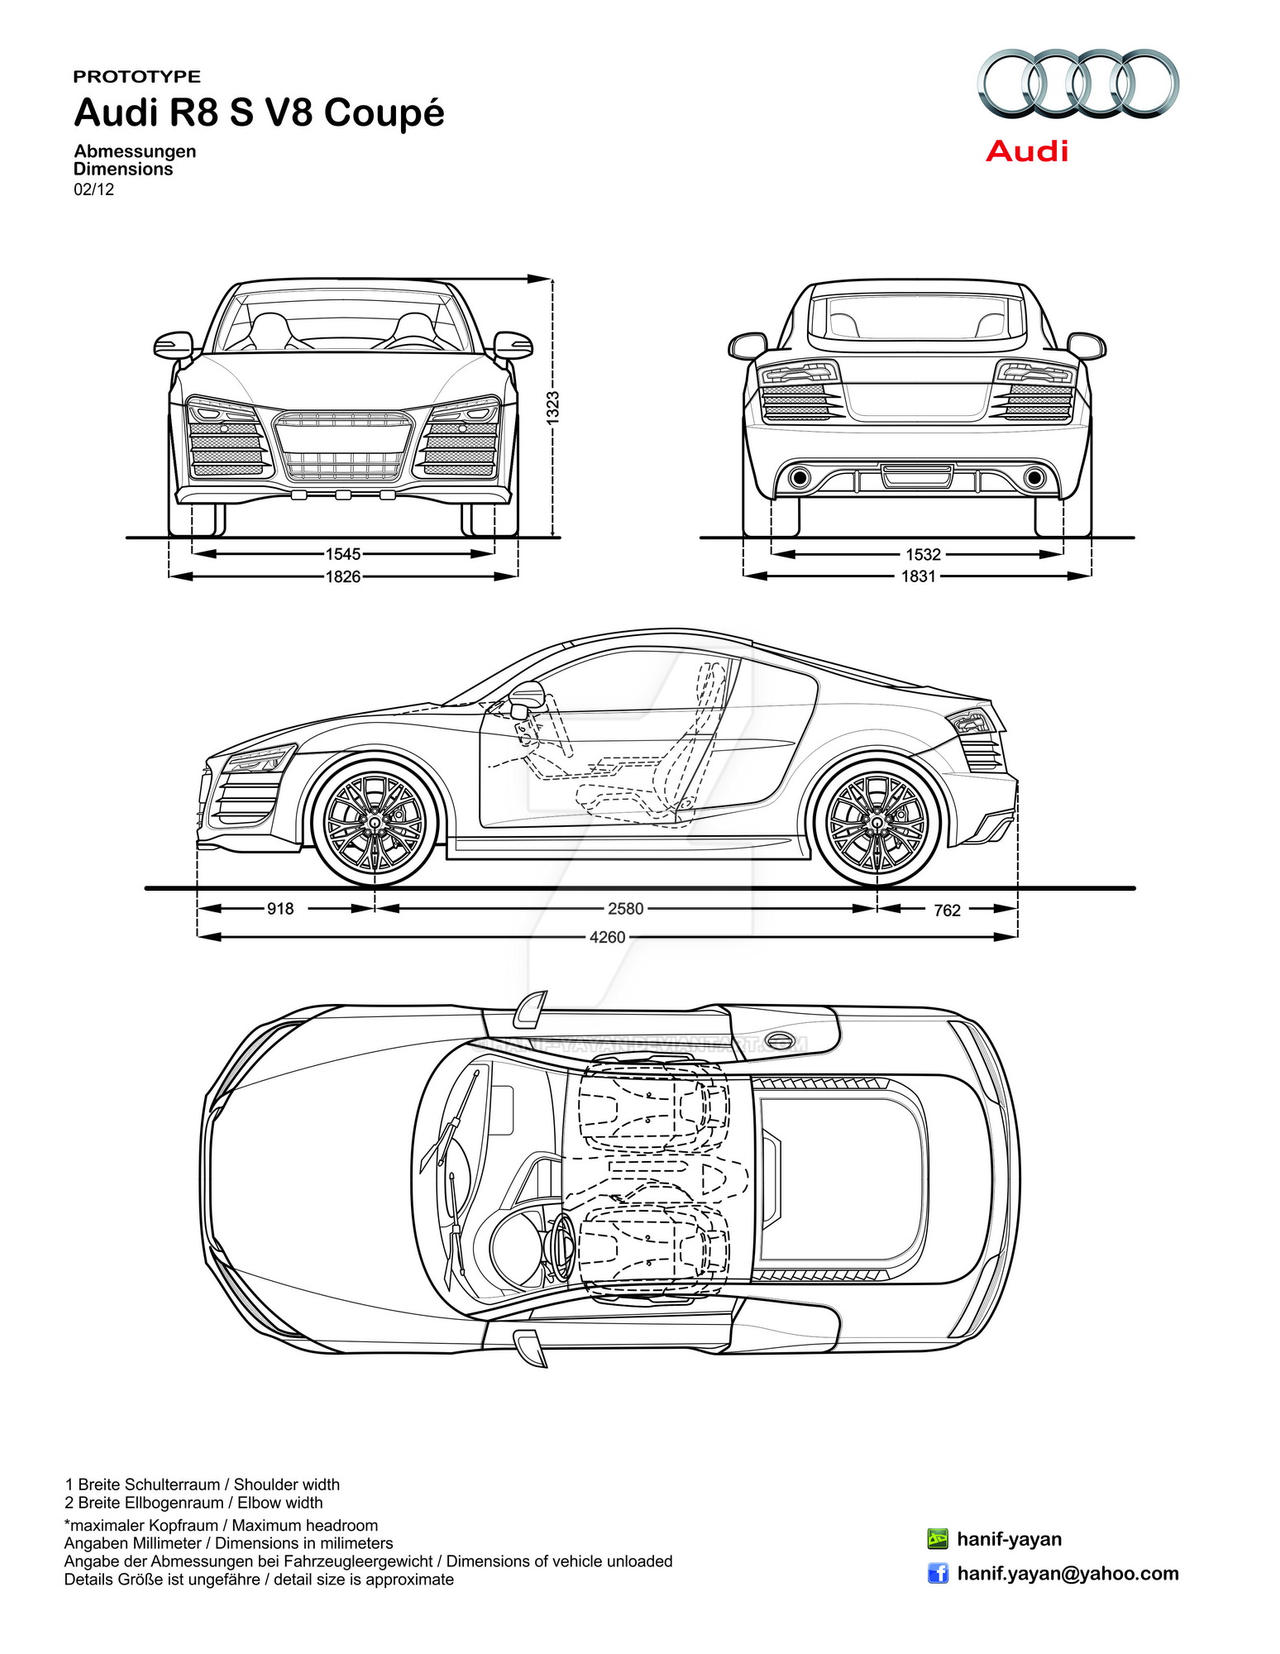 Nếu bạn yêu thích ôtô thể thao Audi R8S V8, bản vẽ của nó chắc chắn sẽ khiến bạn cảm thấy hào hứng. Xem hình ảnh liên quan và tận hưởng sự độc đáo và đẹp mắt của chiếc xe này.